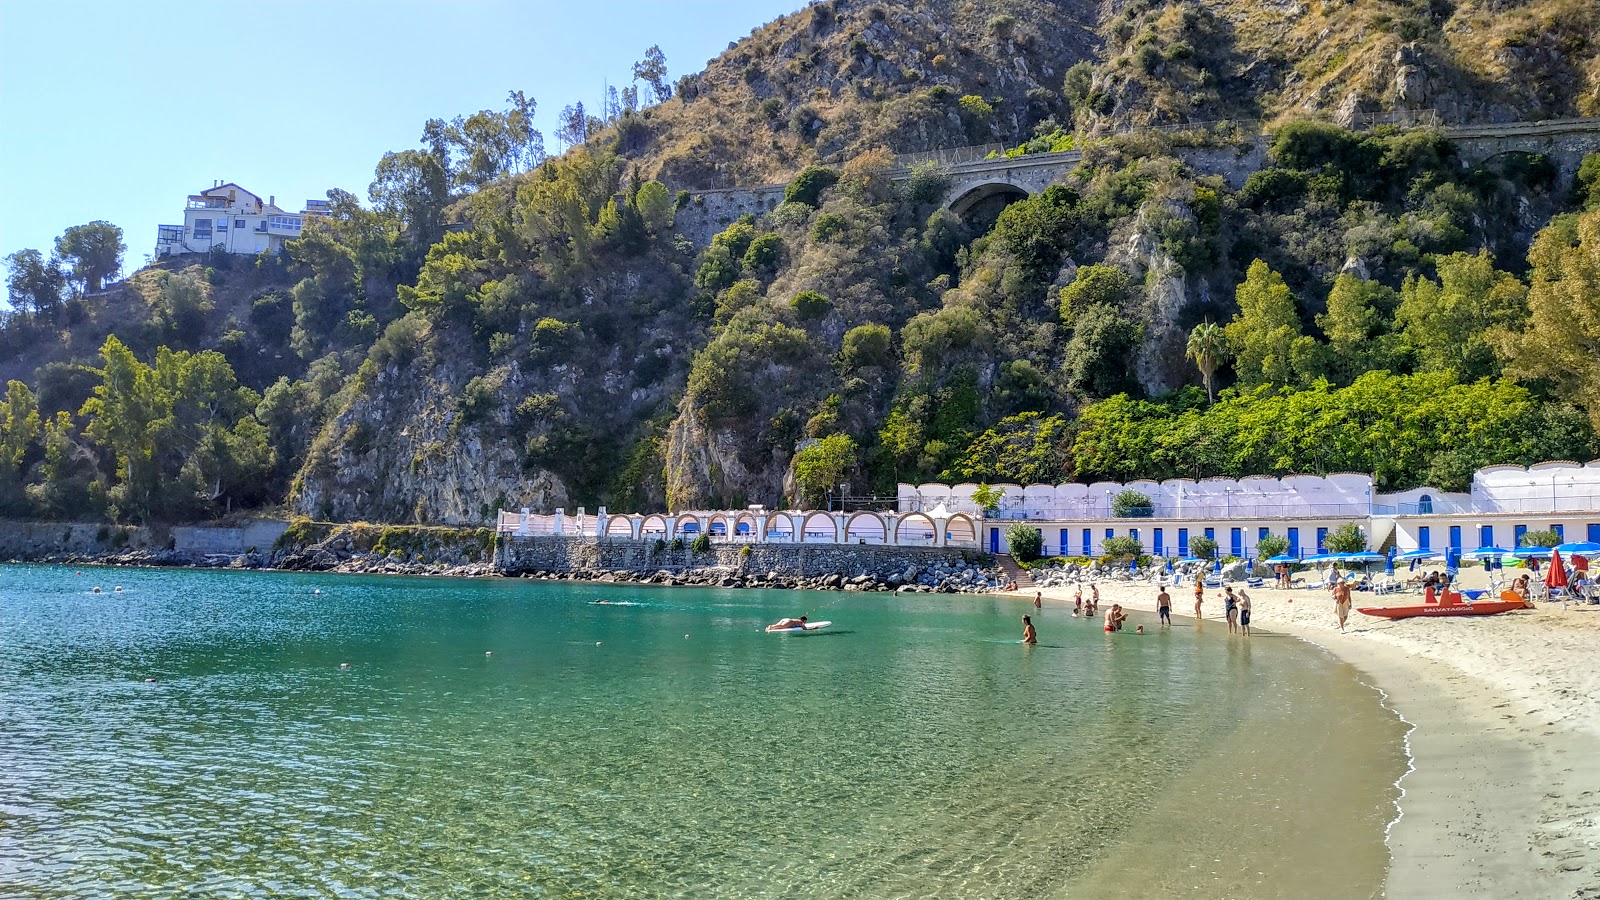 Fotografie cu Spiaggia di Copanello cu o suprafață de apa albastra